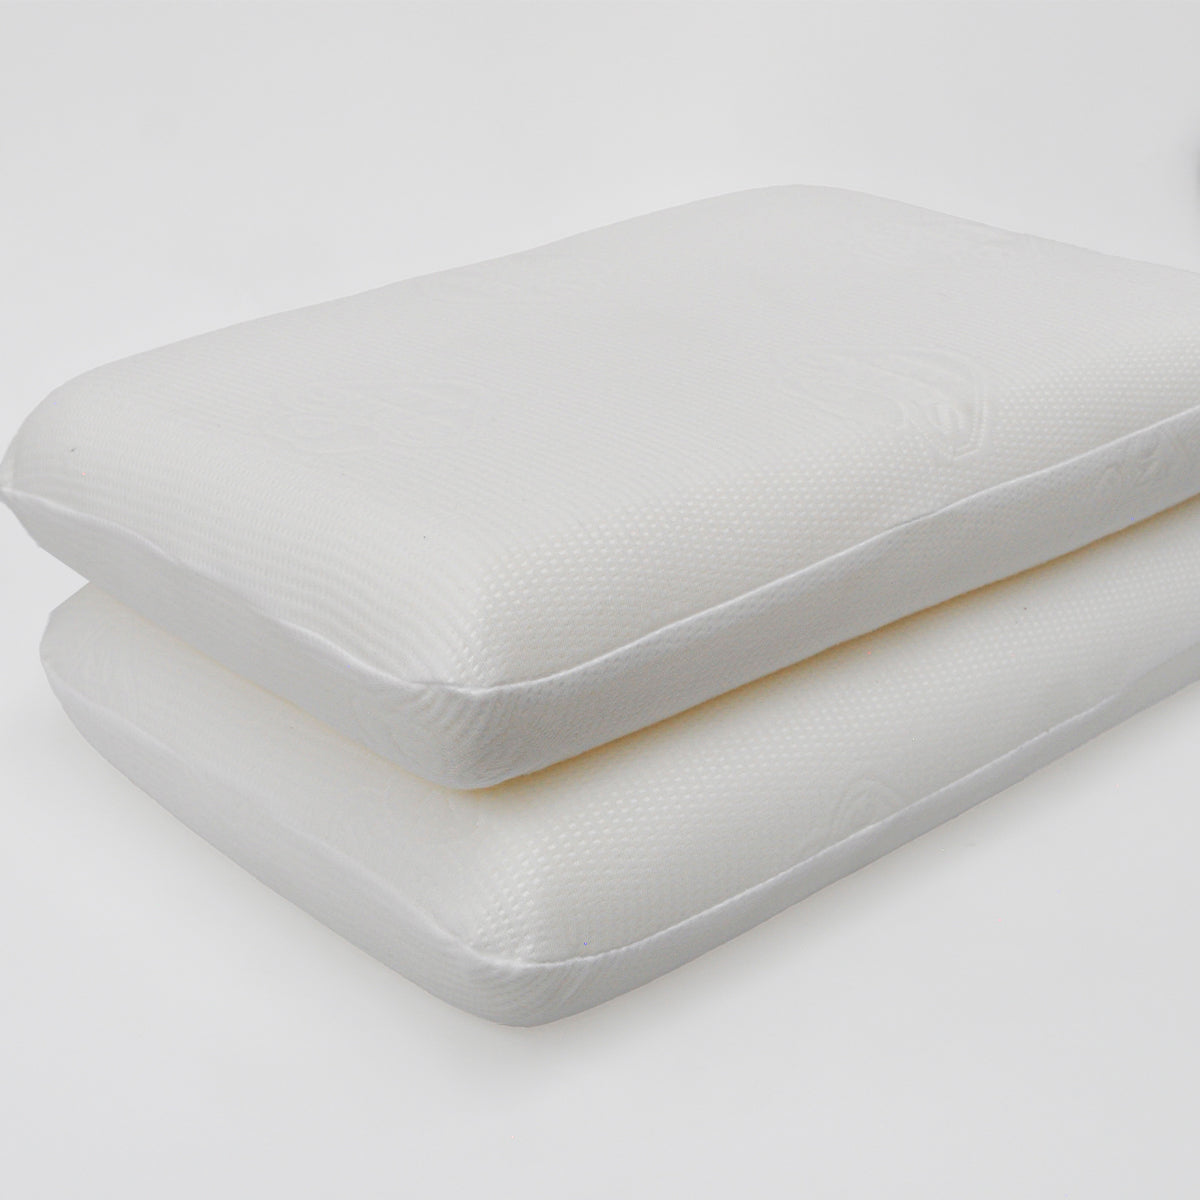 Inserto de almohadas para ropa de cama (1 paquete blanco) - Almohadas para  cama y sofá de 19,6x19,6 pulgadas - Almohadas decorativas para interiores  YONGSHENG 9024735199267